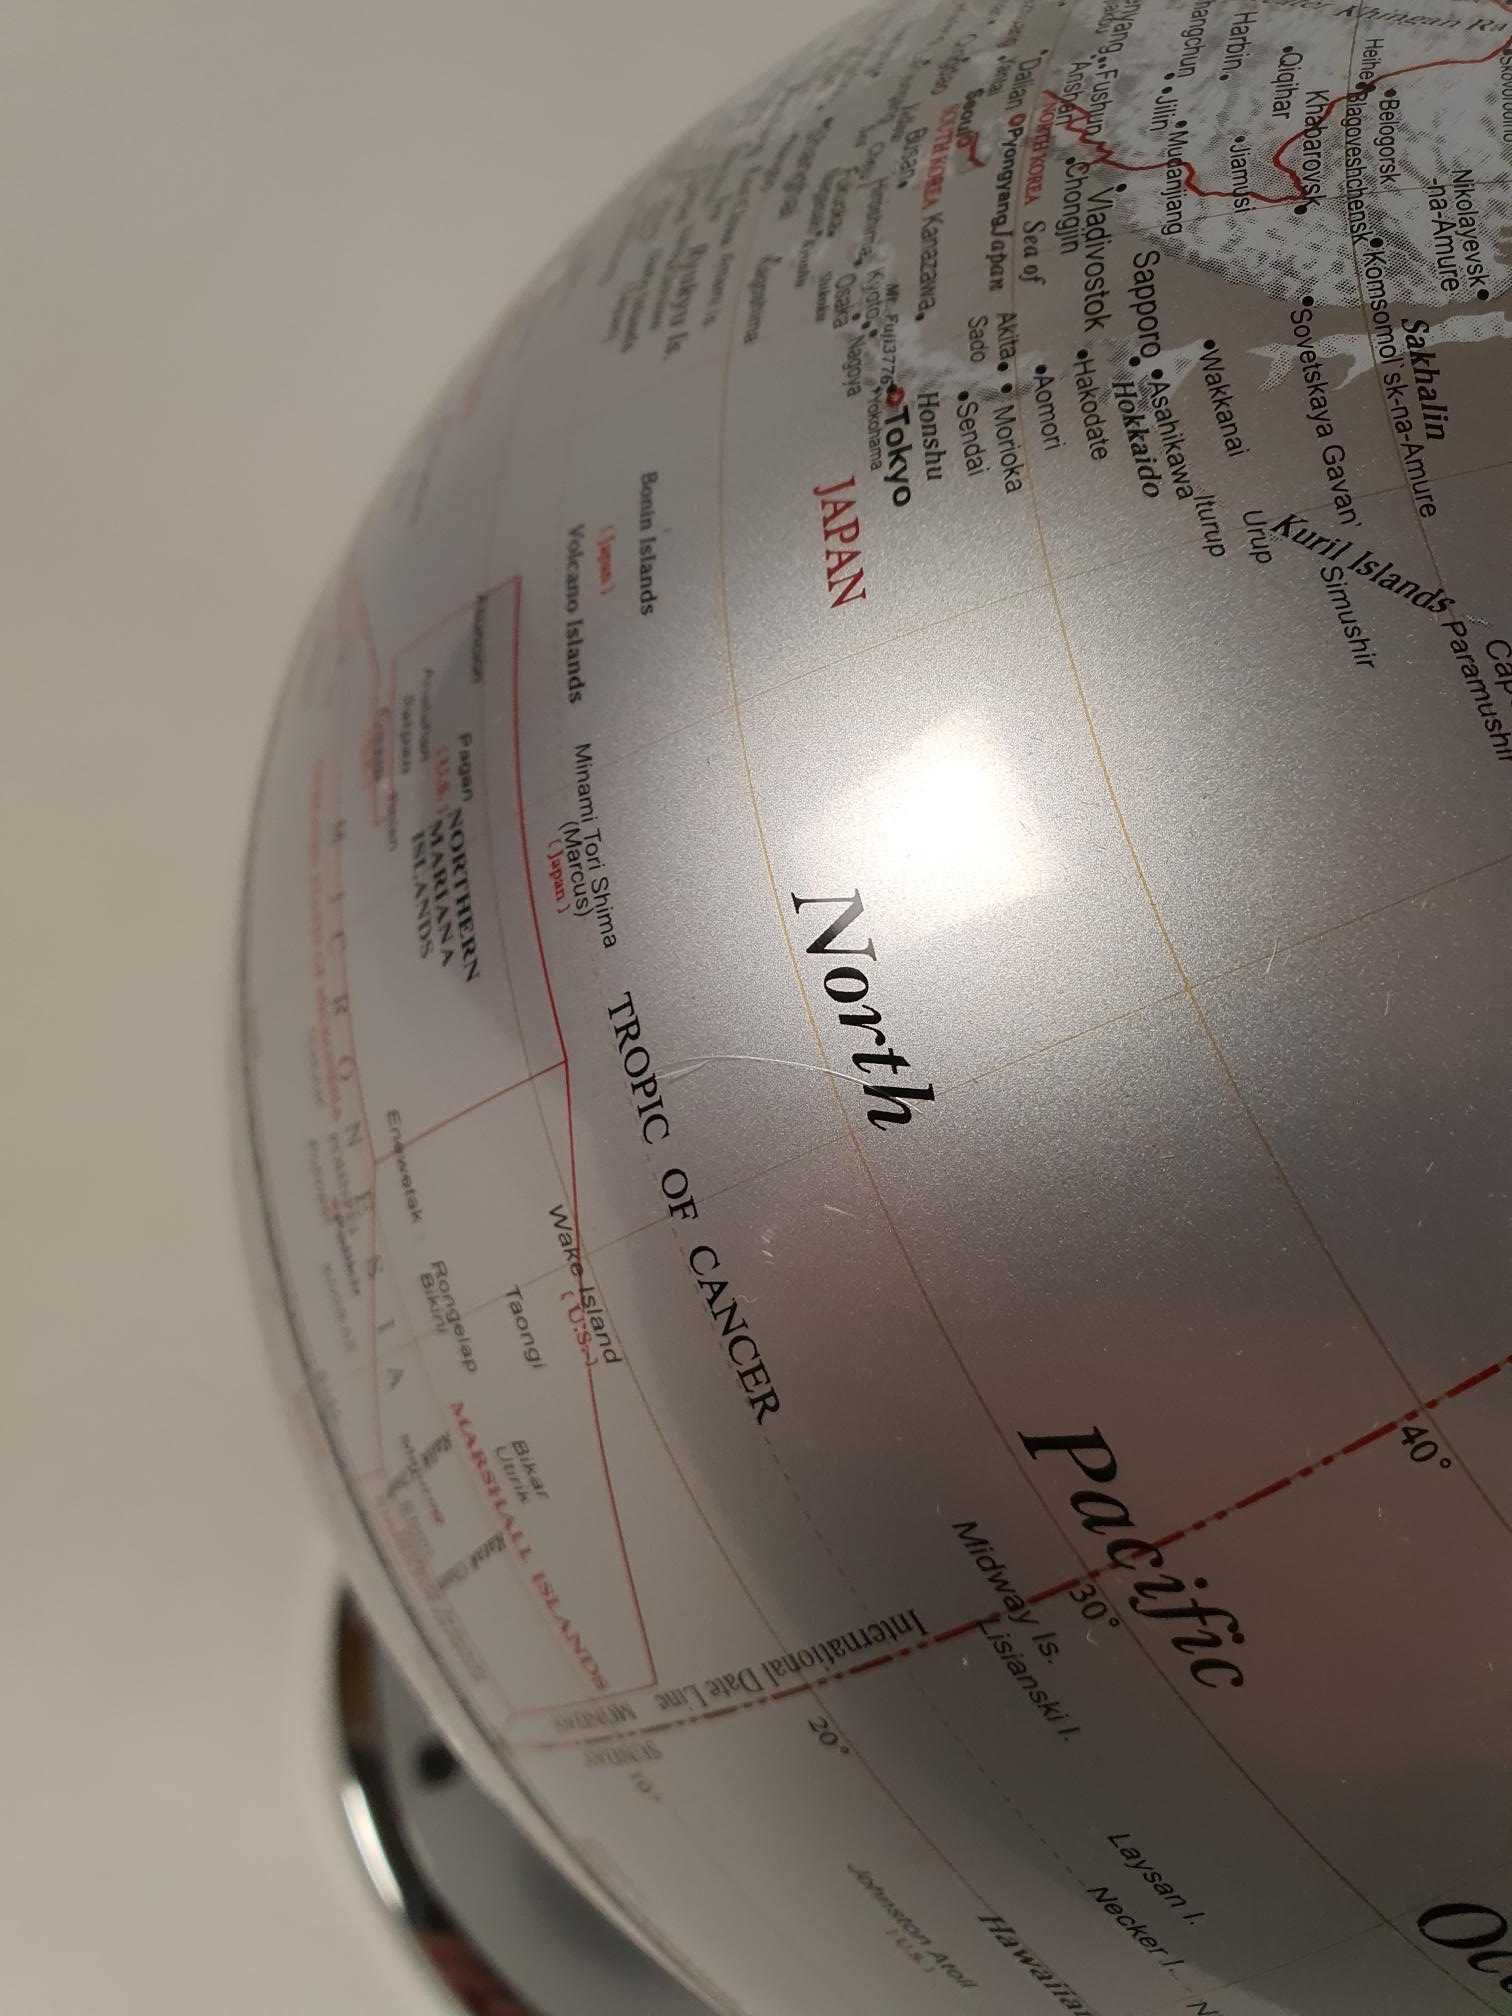 Globus kula ziemska, mapa świata metalowa podstawa Mascagni 20A